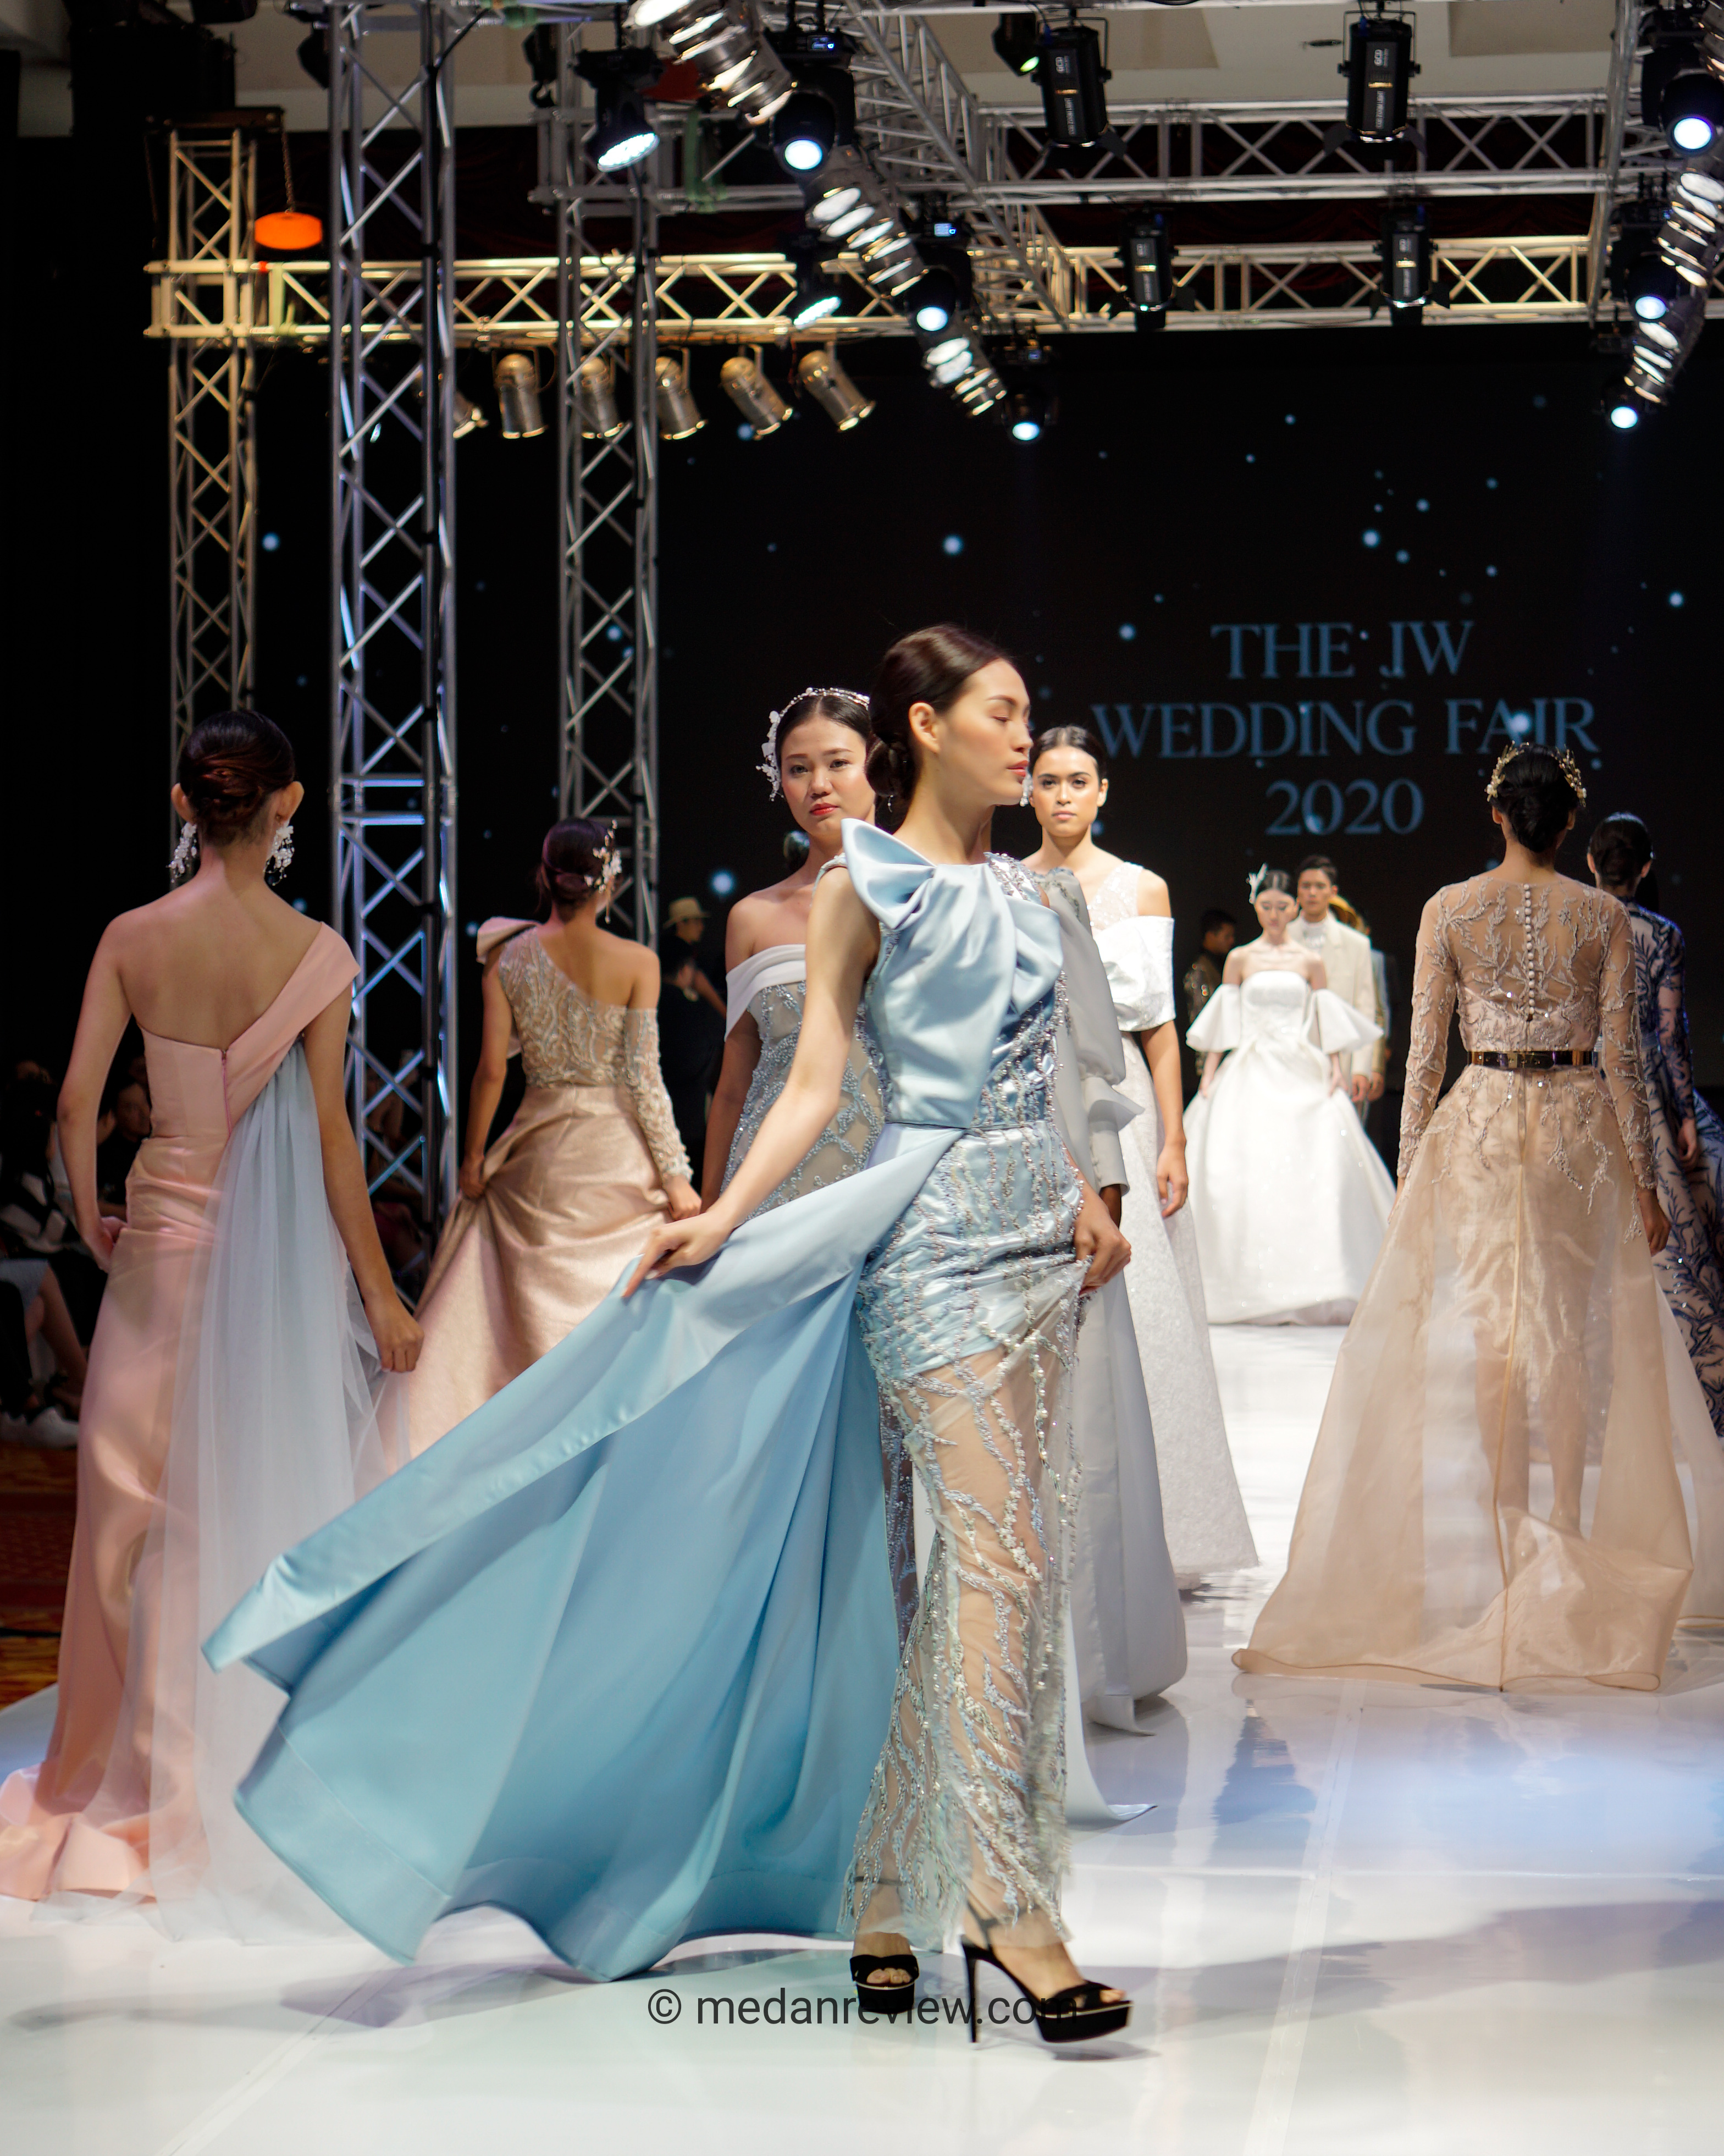 Photo #8 : Enam Fashion Designer Di Fashion Show The JW Wedding Fest 2020